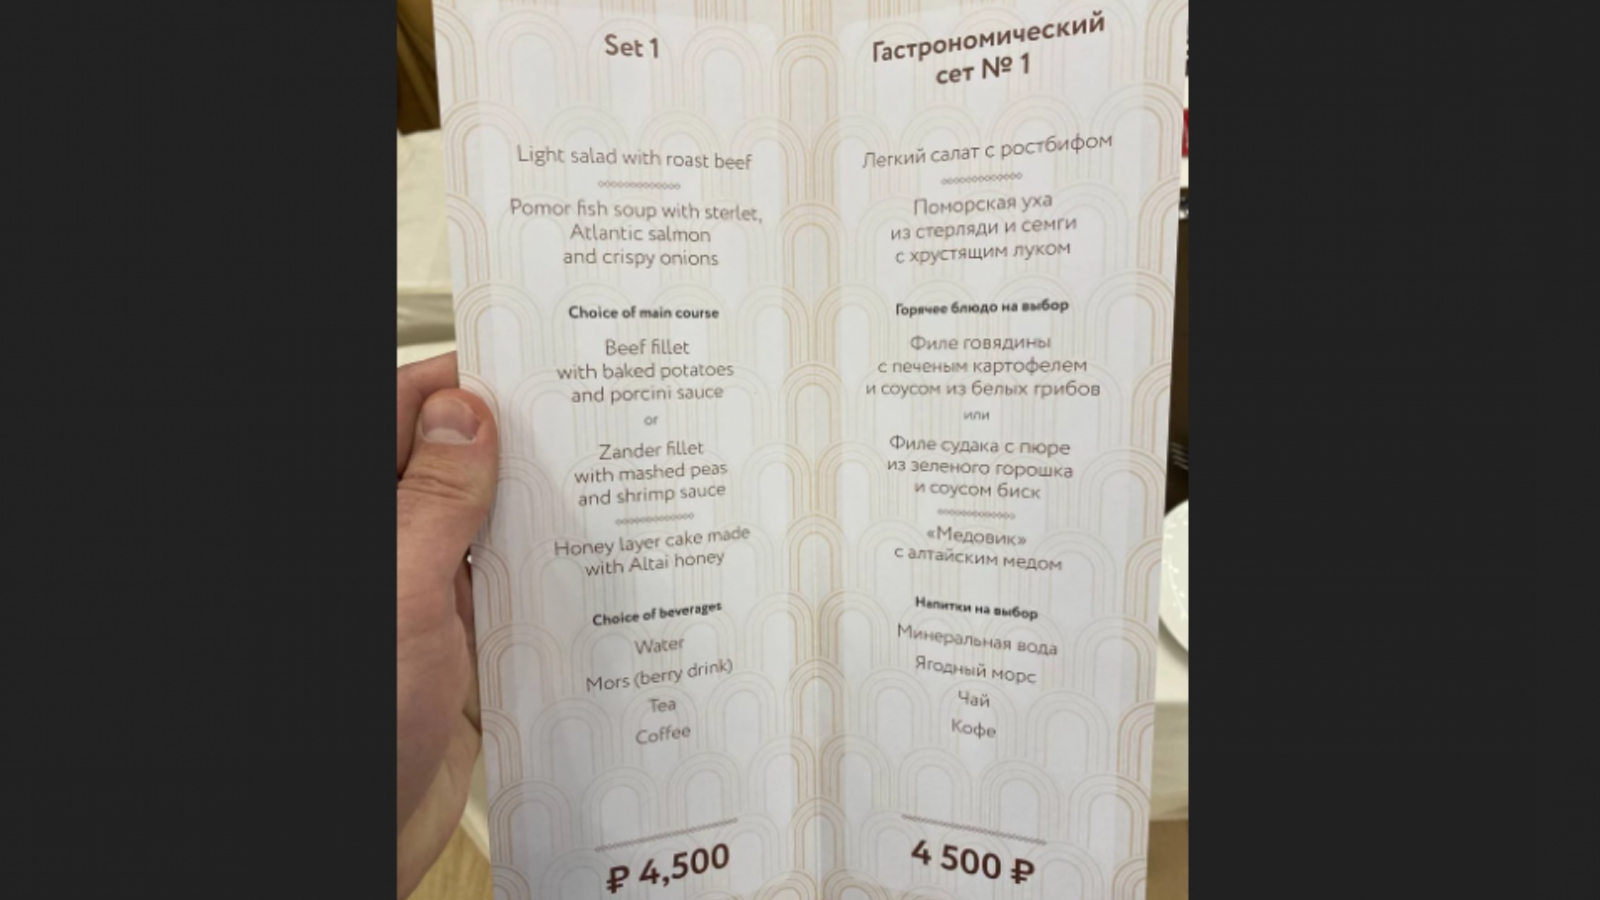 Гостям экономического форума в Петербурге предложили пообедать за 4500 рублей